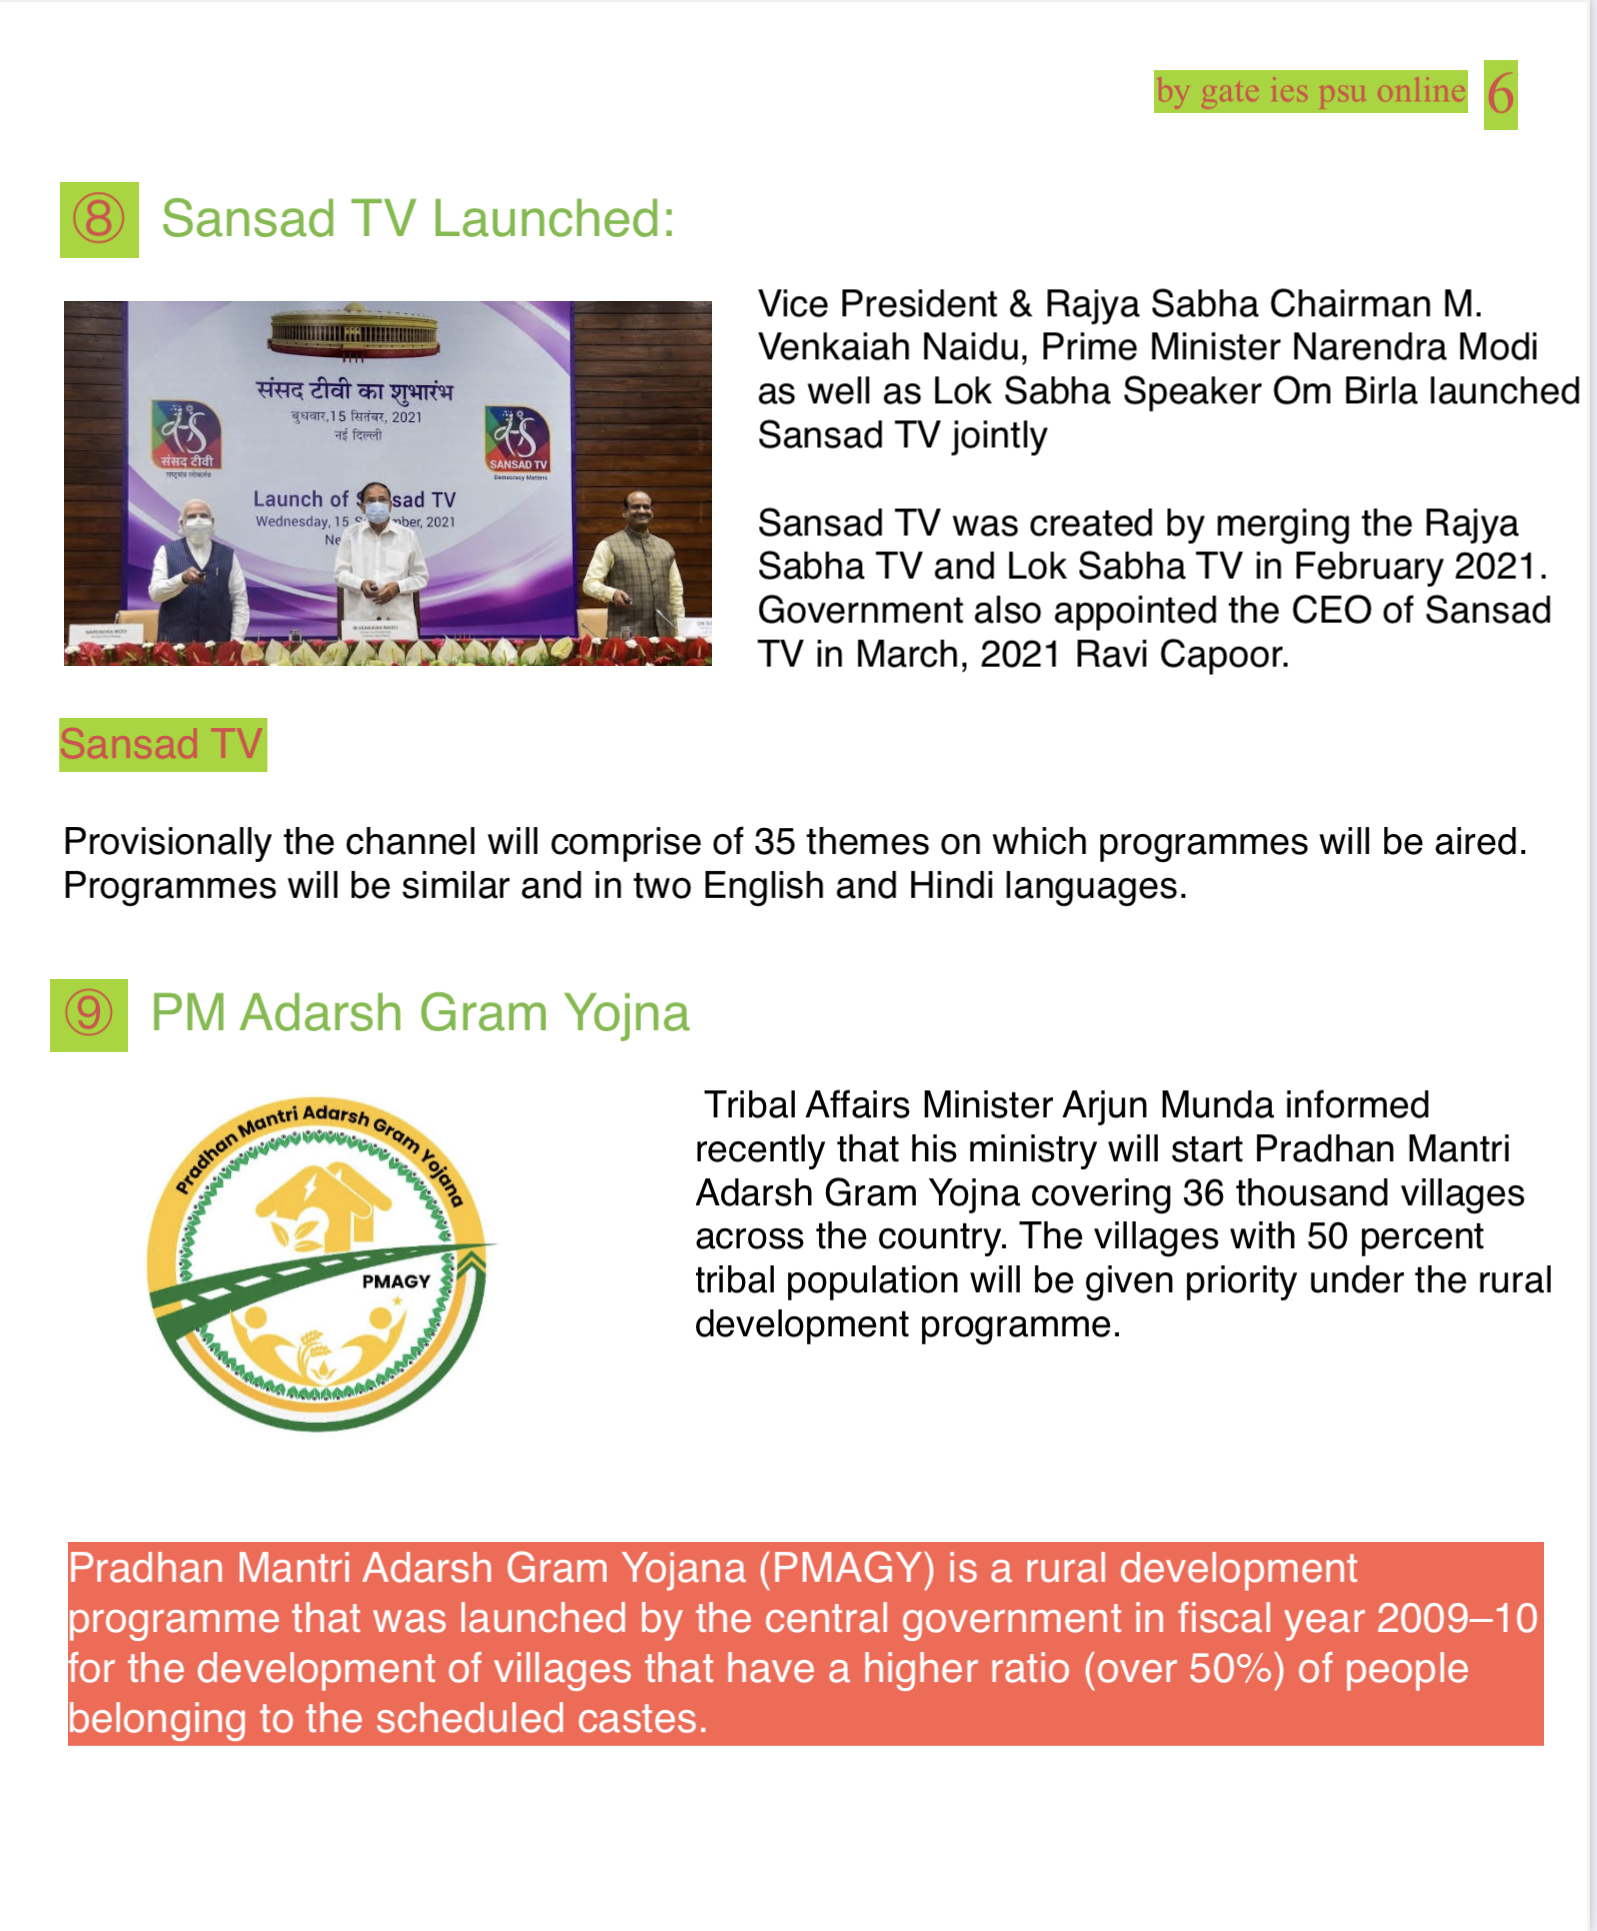 SANSAD TV, PM ADARSH GRAM YOJNA UPSC CURRENT AFFAIRS 